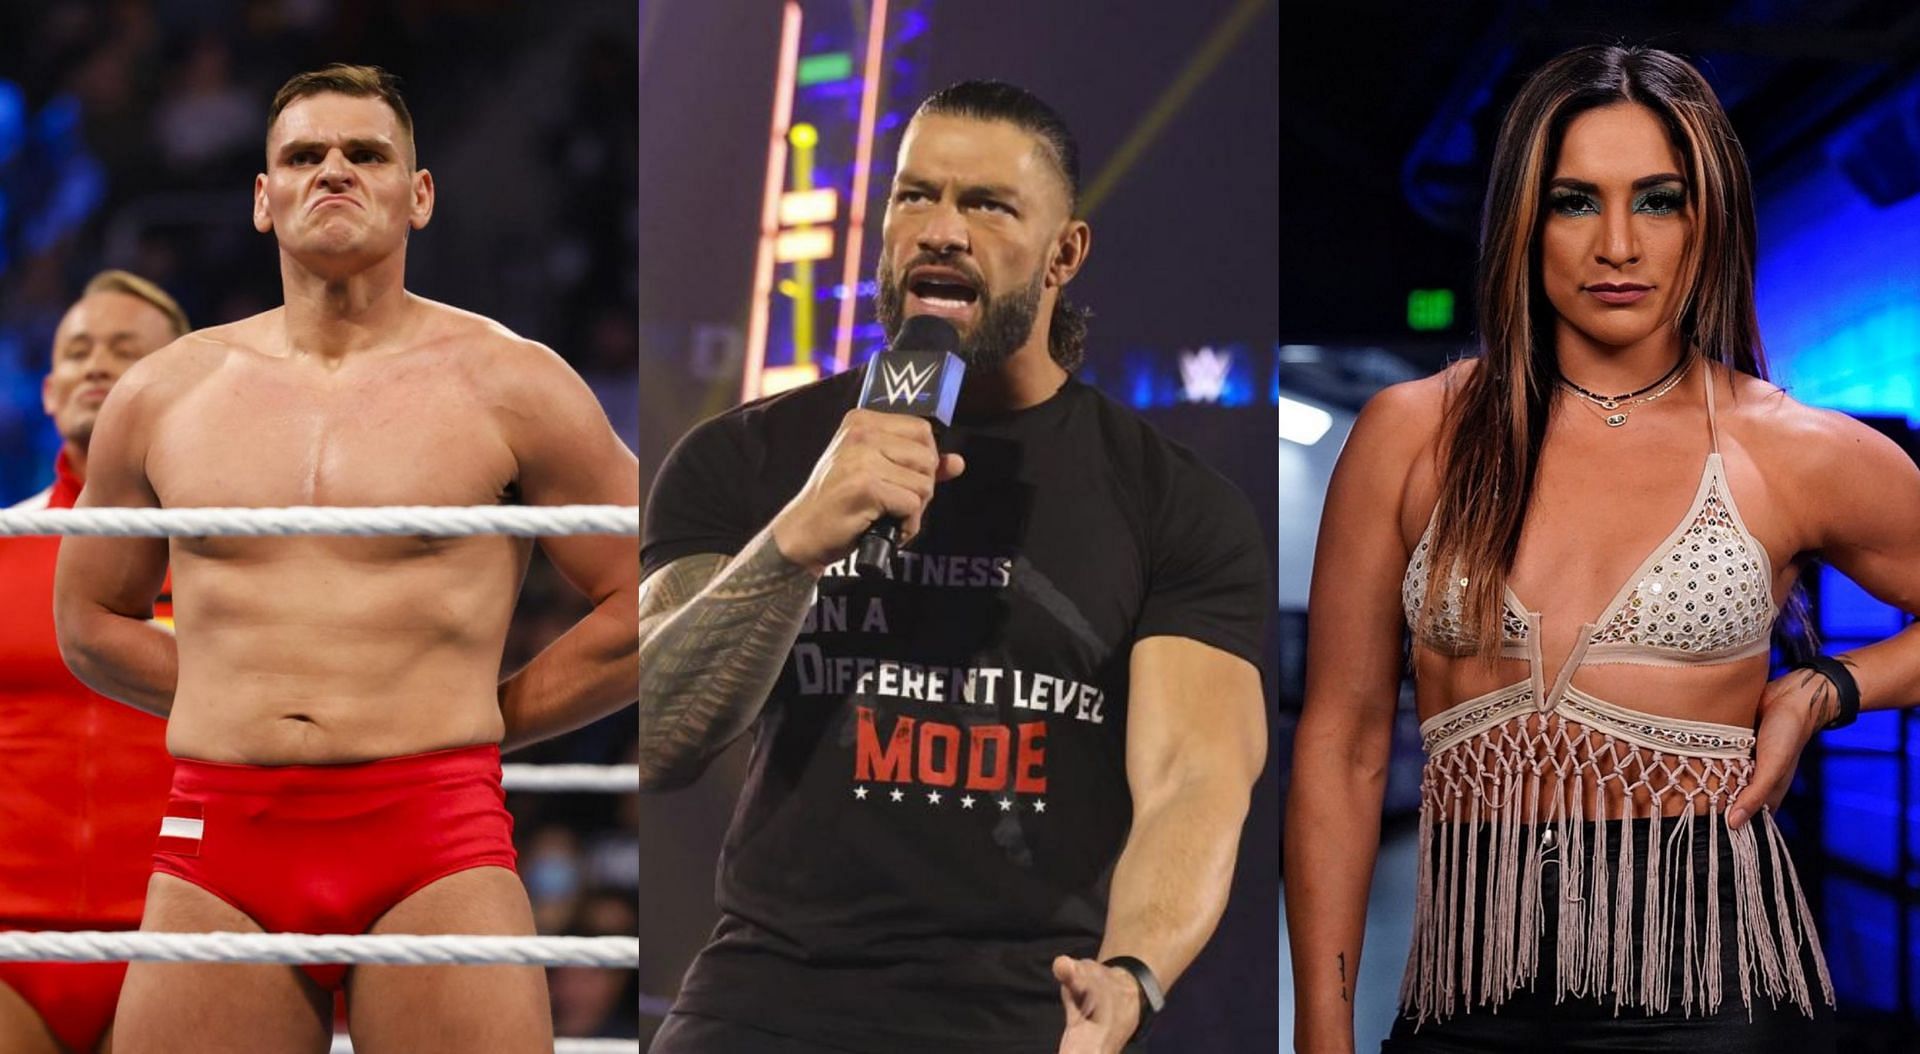 WWE SmackDOwn को लेकर सभी की प्रतिक्रियाएं थोड़ी अलग रही